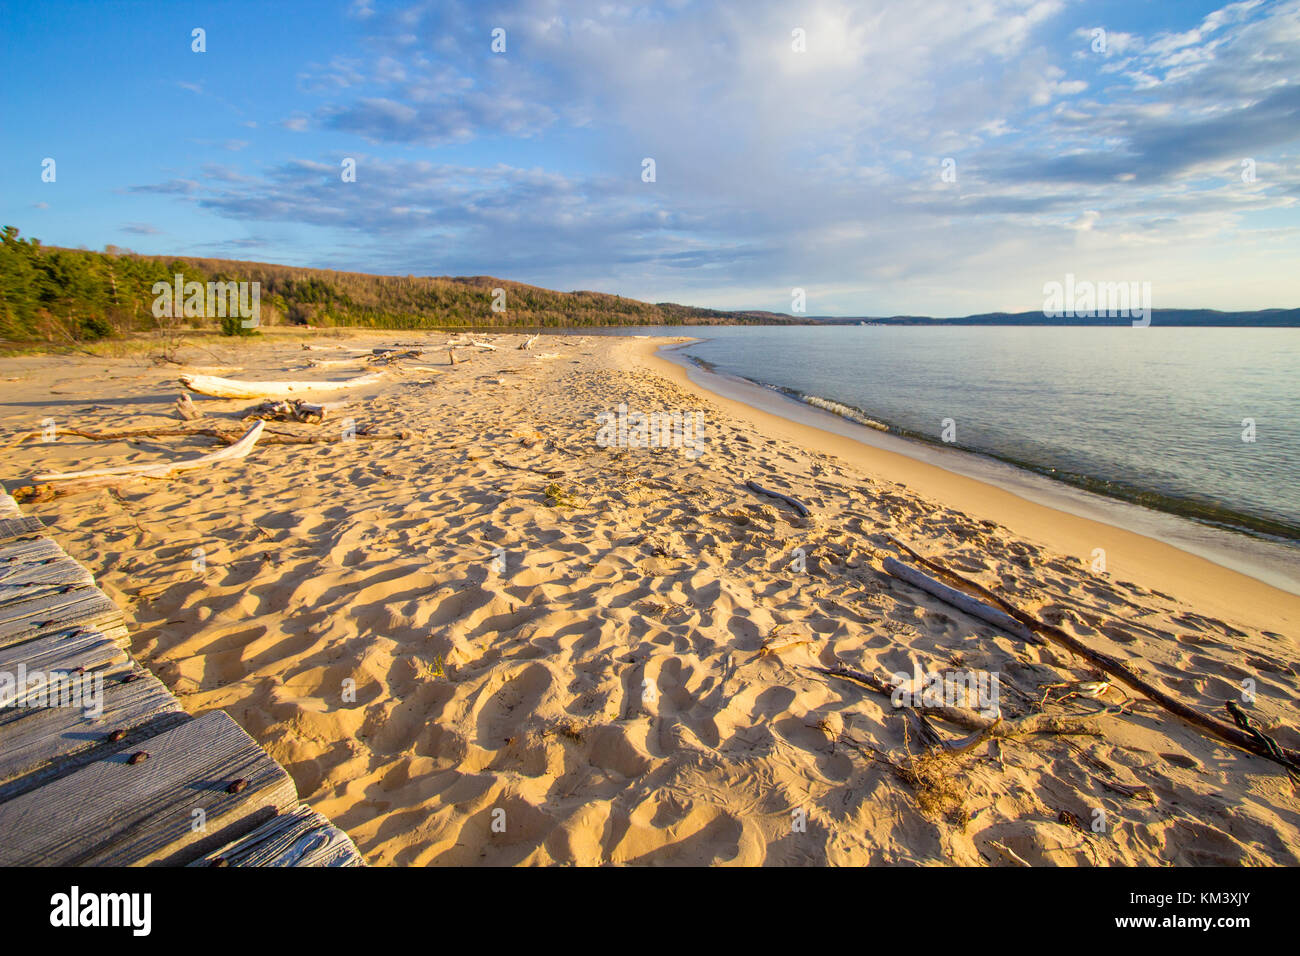 Sommer Strand Panorama. Breite Sandstrand am Ufer des Lake Superior an einem sonnigen Sommertag im abgebildeten Rocks National Lakeshore in Michigan. Stockfoto